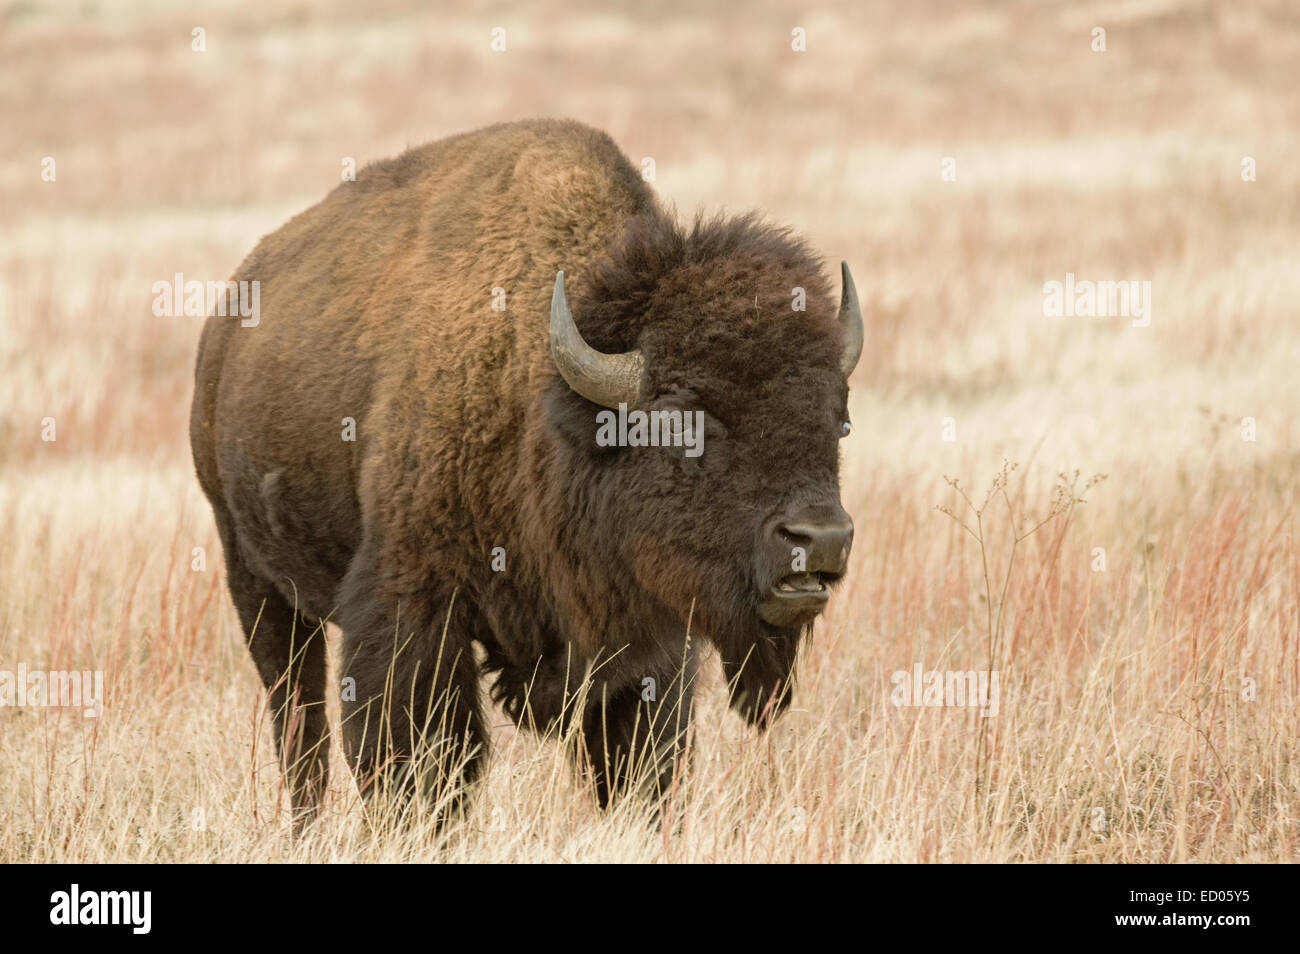 Bison o bufalo americano nel campo della prateria a bocca aperta Foto Stock